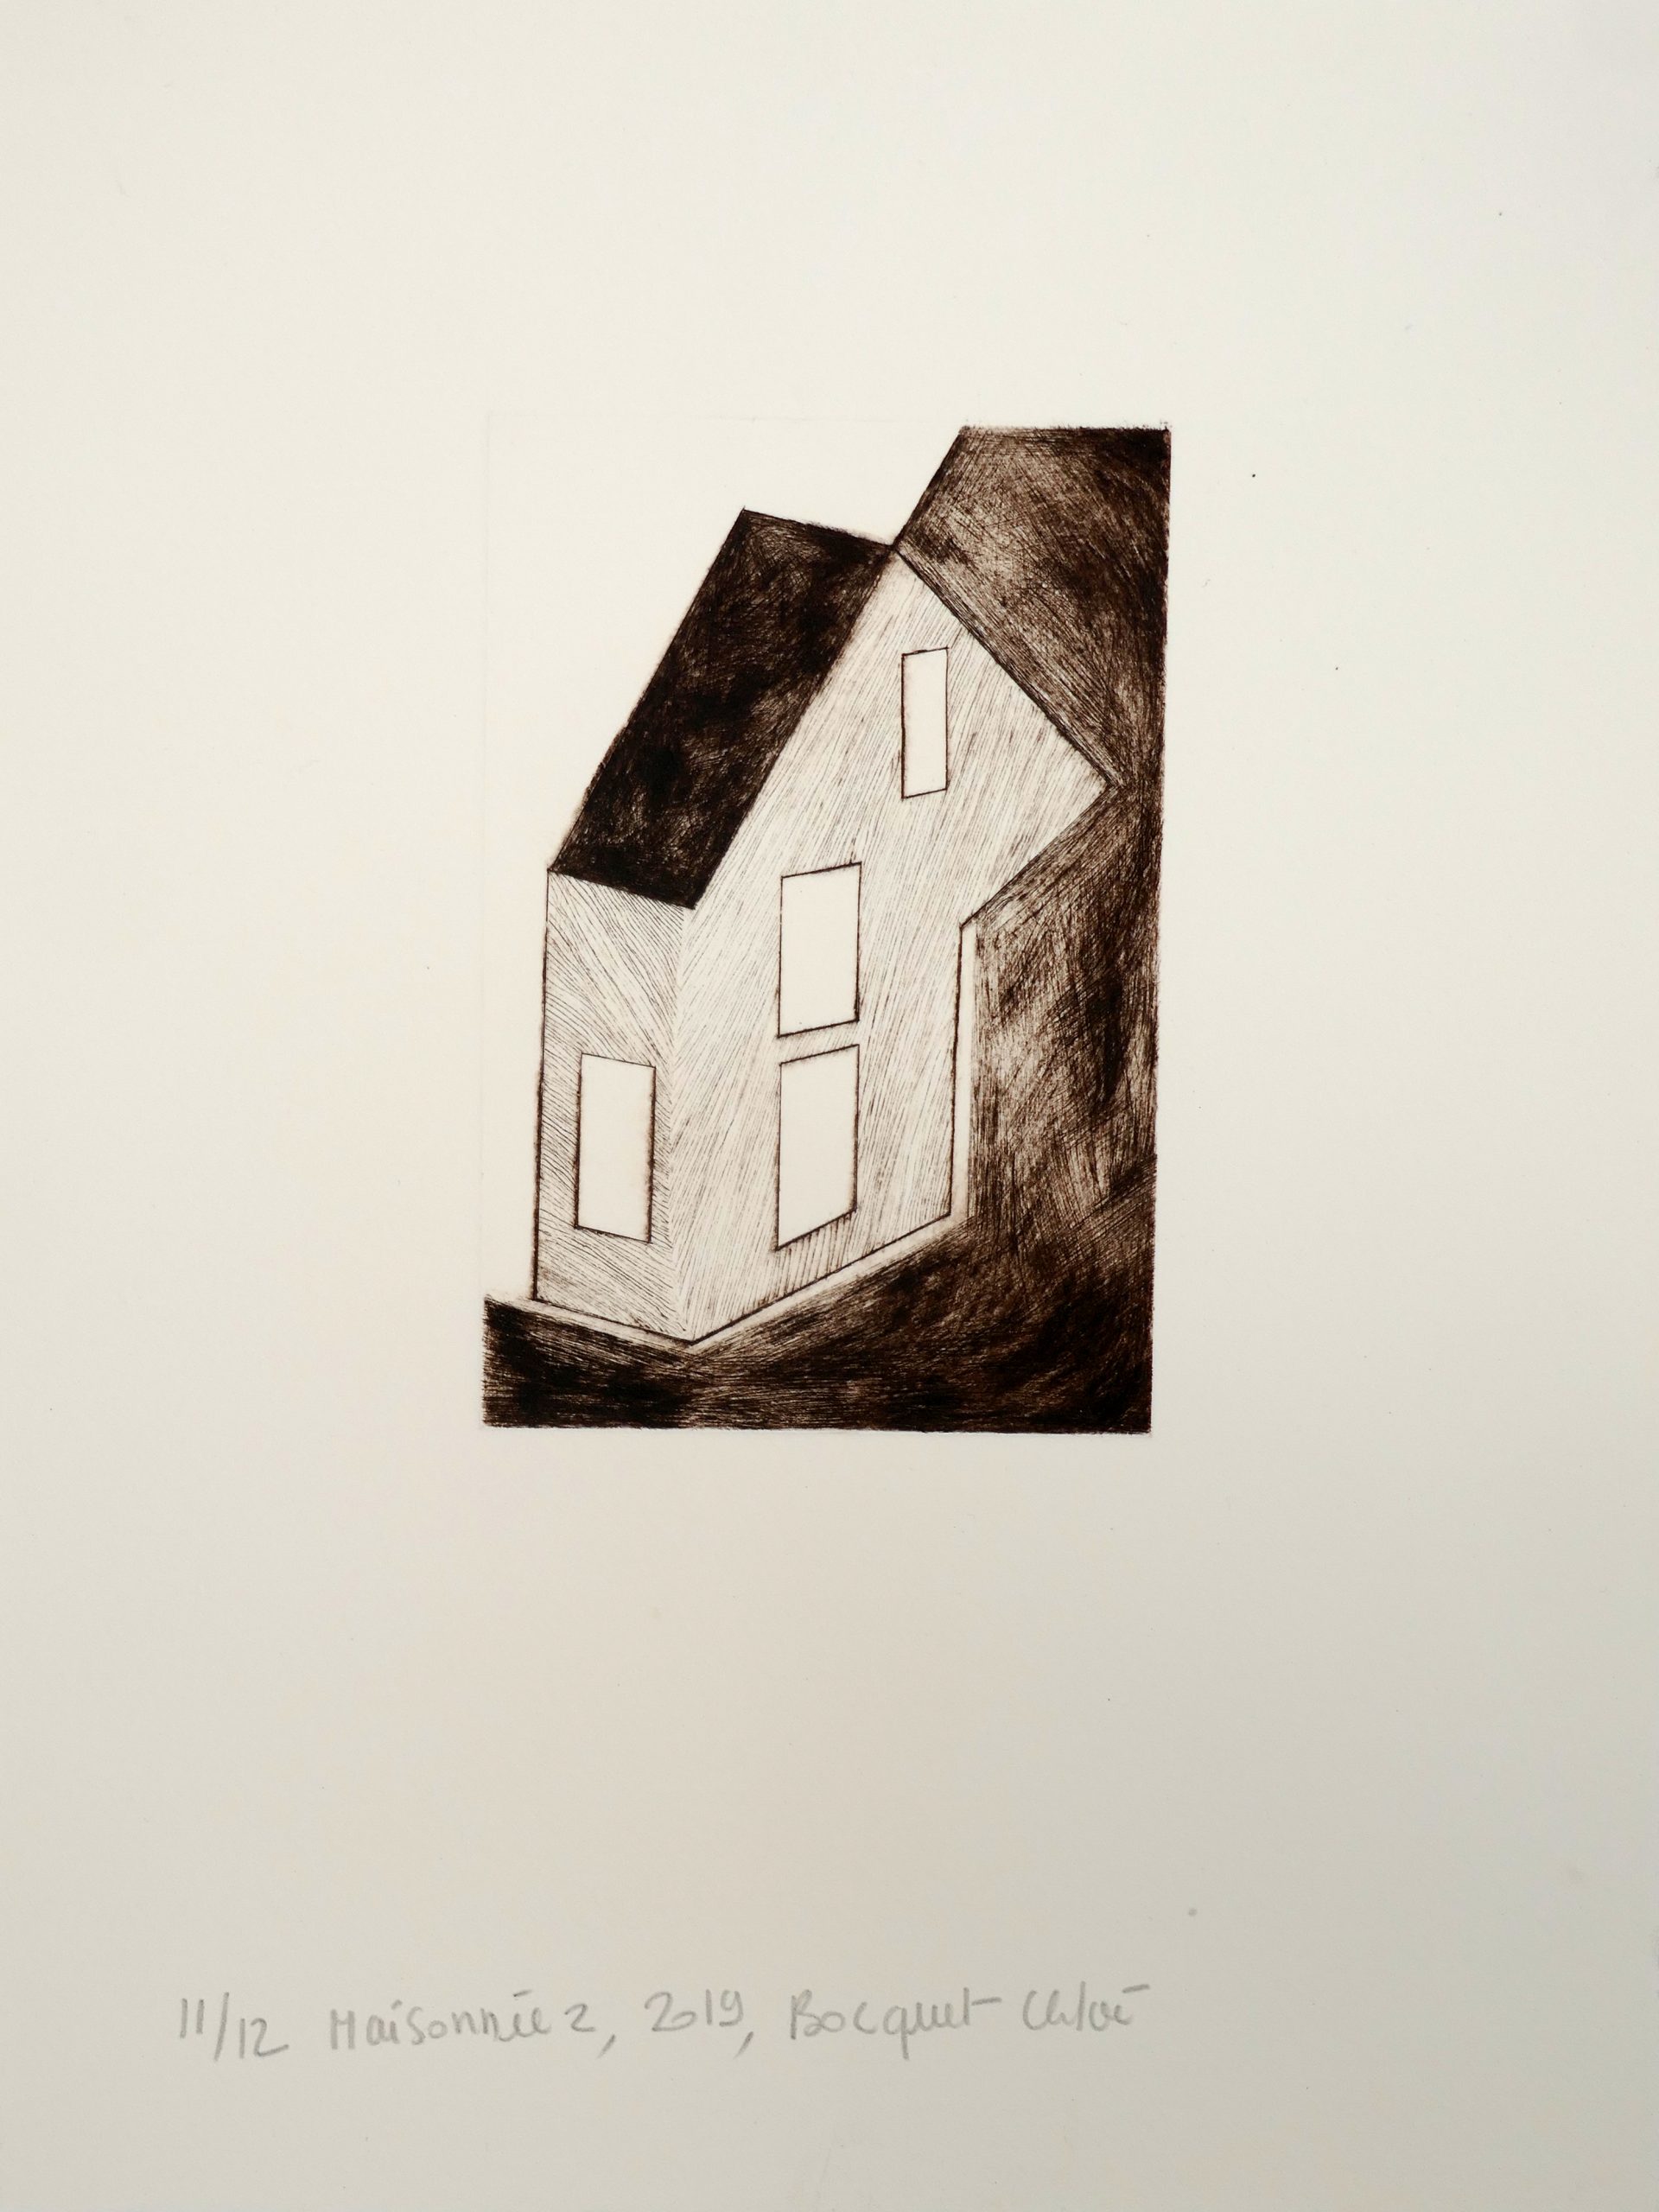 Maisonnée 2, 2019, drypoint, image size 15x10 cm, paper size 33,5x25 cm, edition of 12